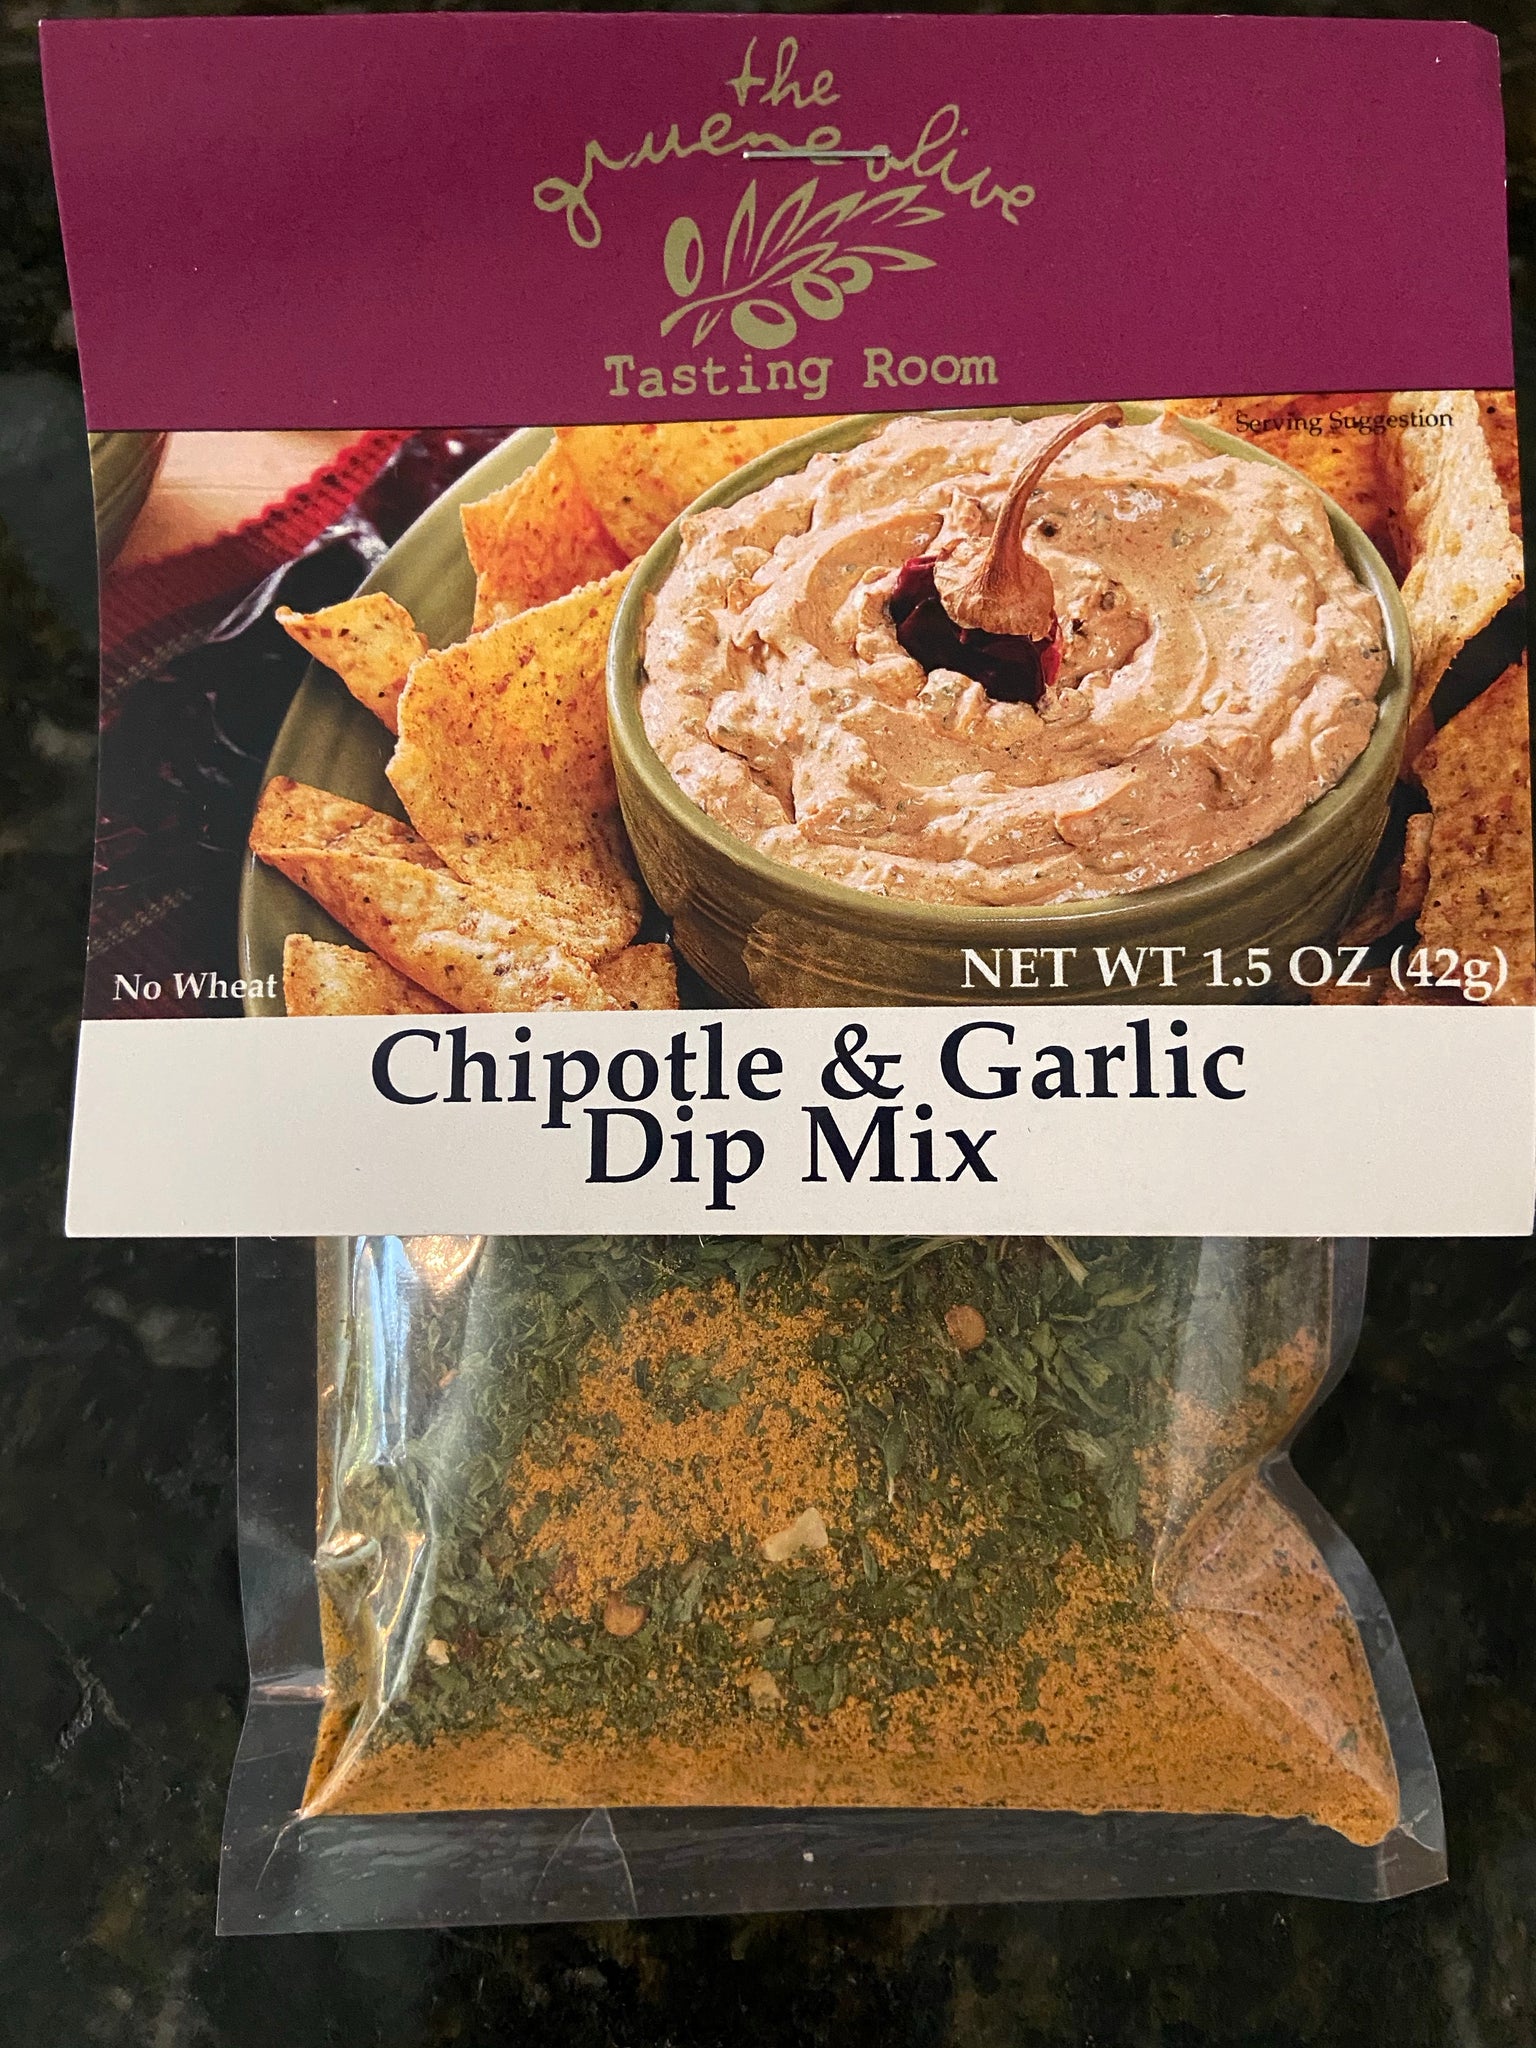 Chipotle & Garlic Dip